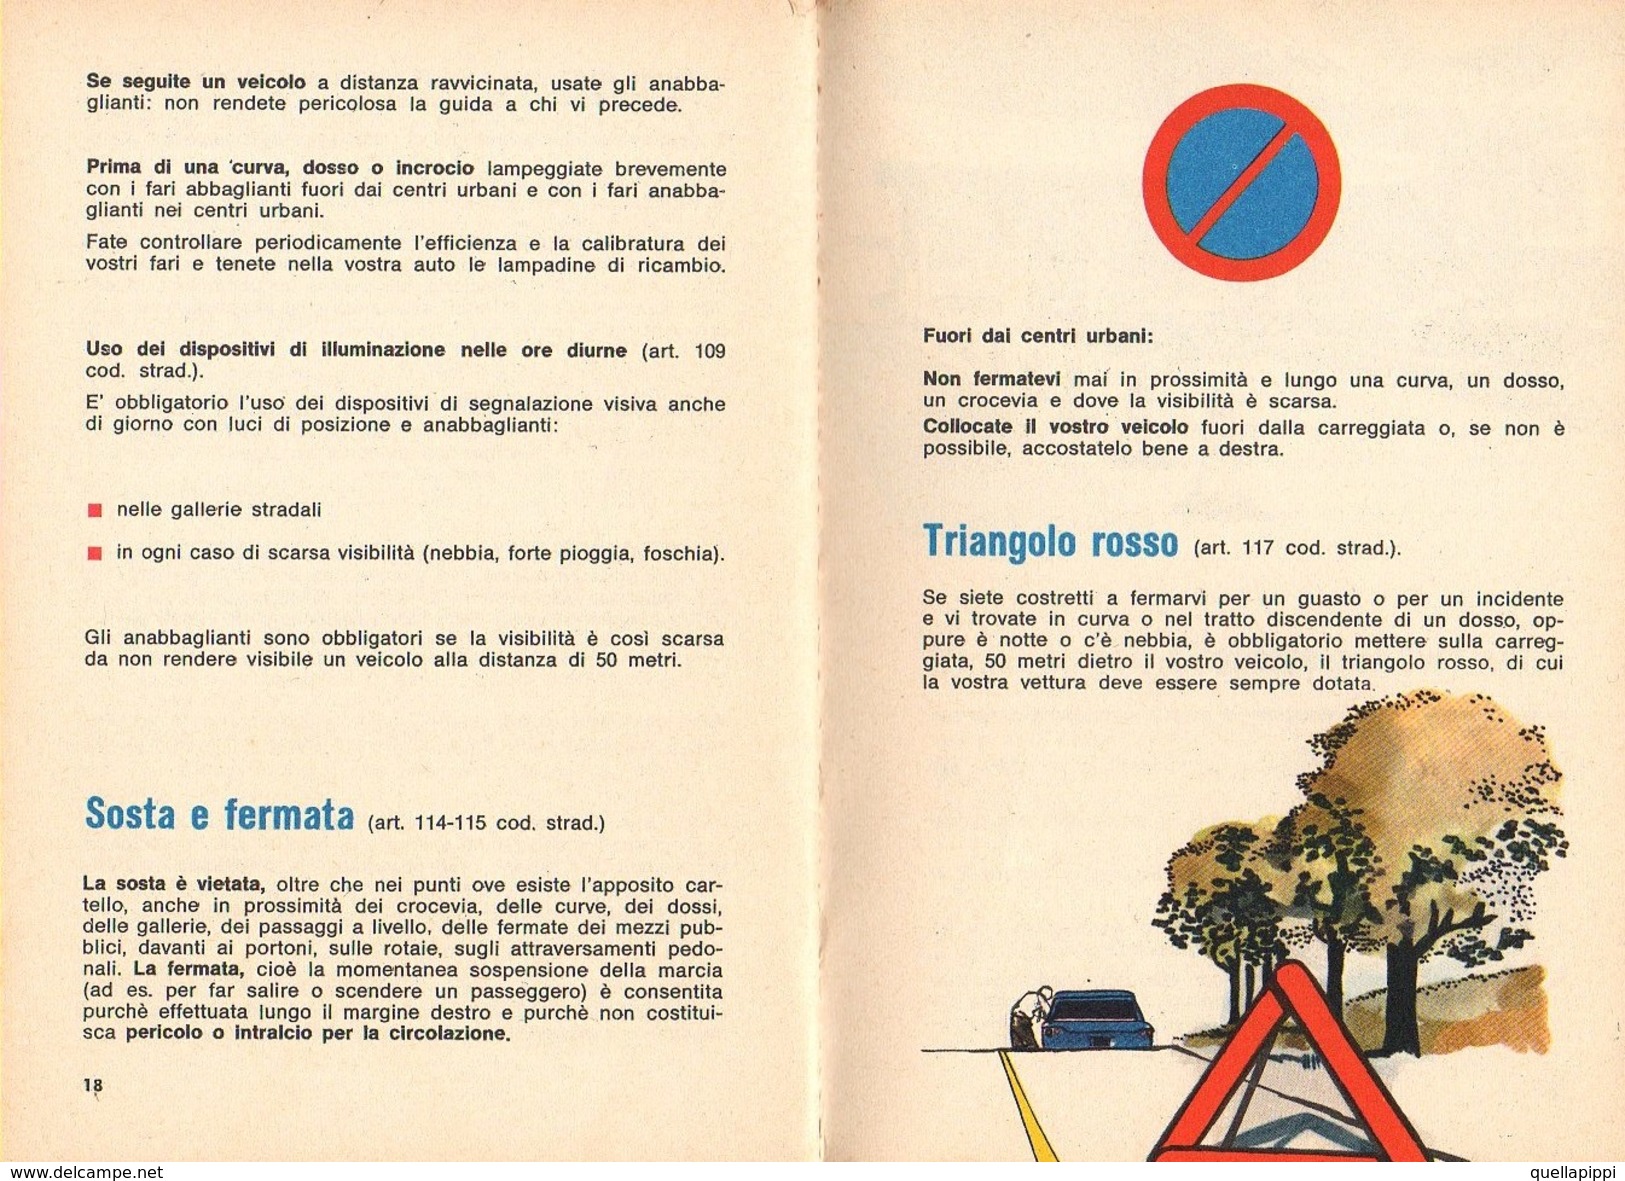 05725 " SEGNALETICA ED EDUCAZIONE STRADALE - SHELL VADEMECUM DELL'AUTOMOBILISTA - 1968" OPUSCOLO PUBBLICITARIO ORIGINALE